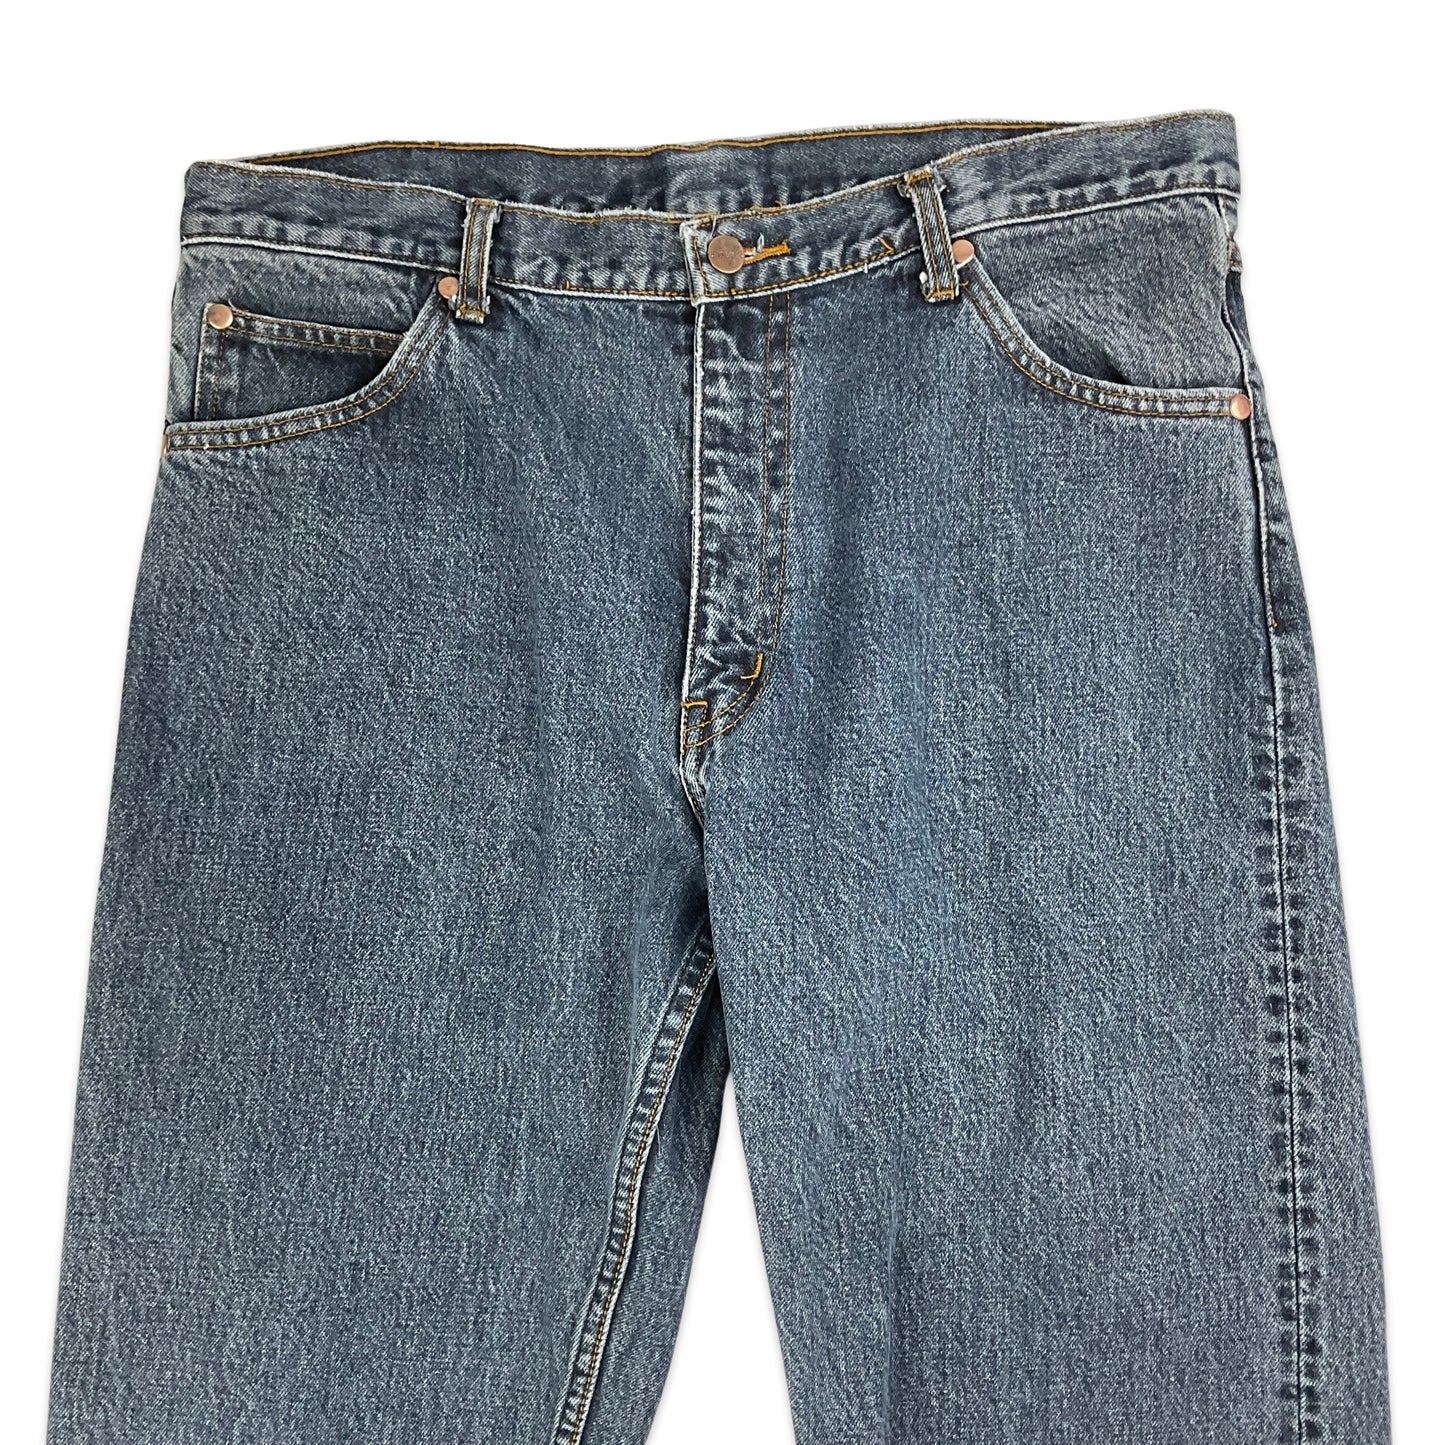 Vintage Wrangler Dark Denim Straight Leg Jeans 14